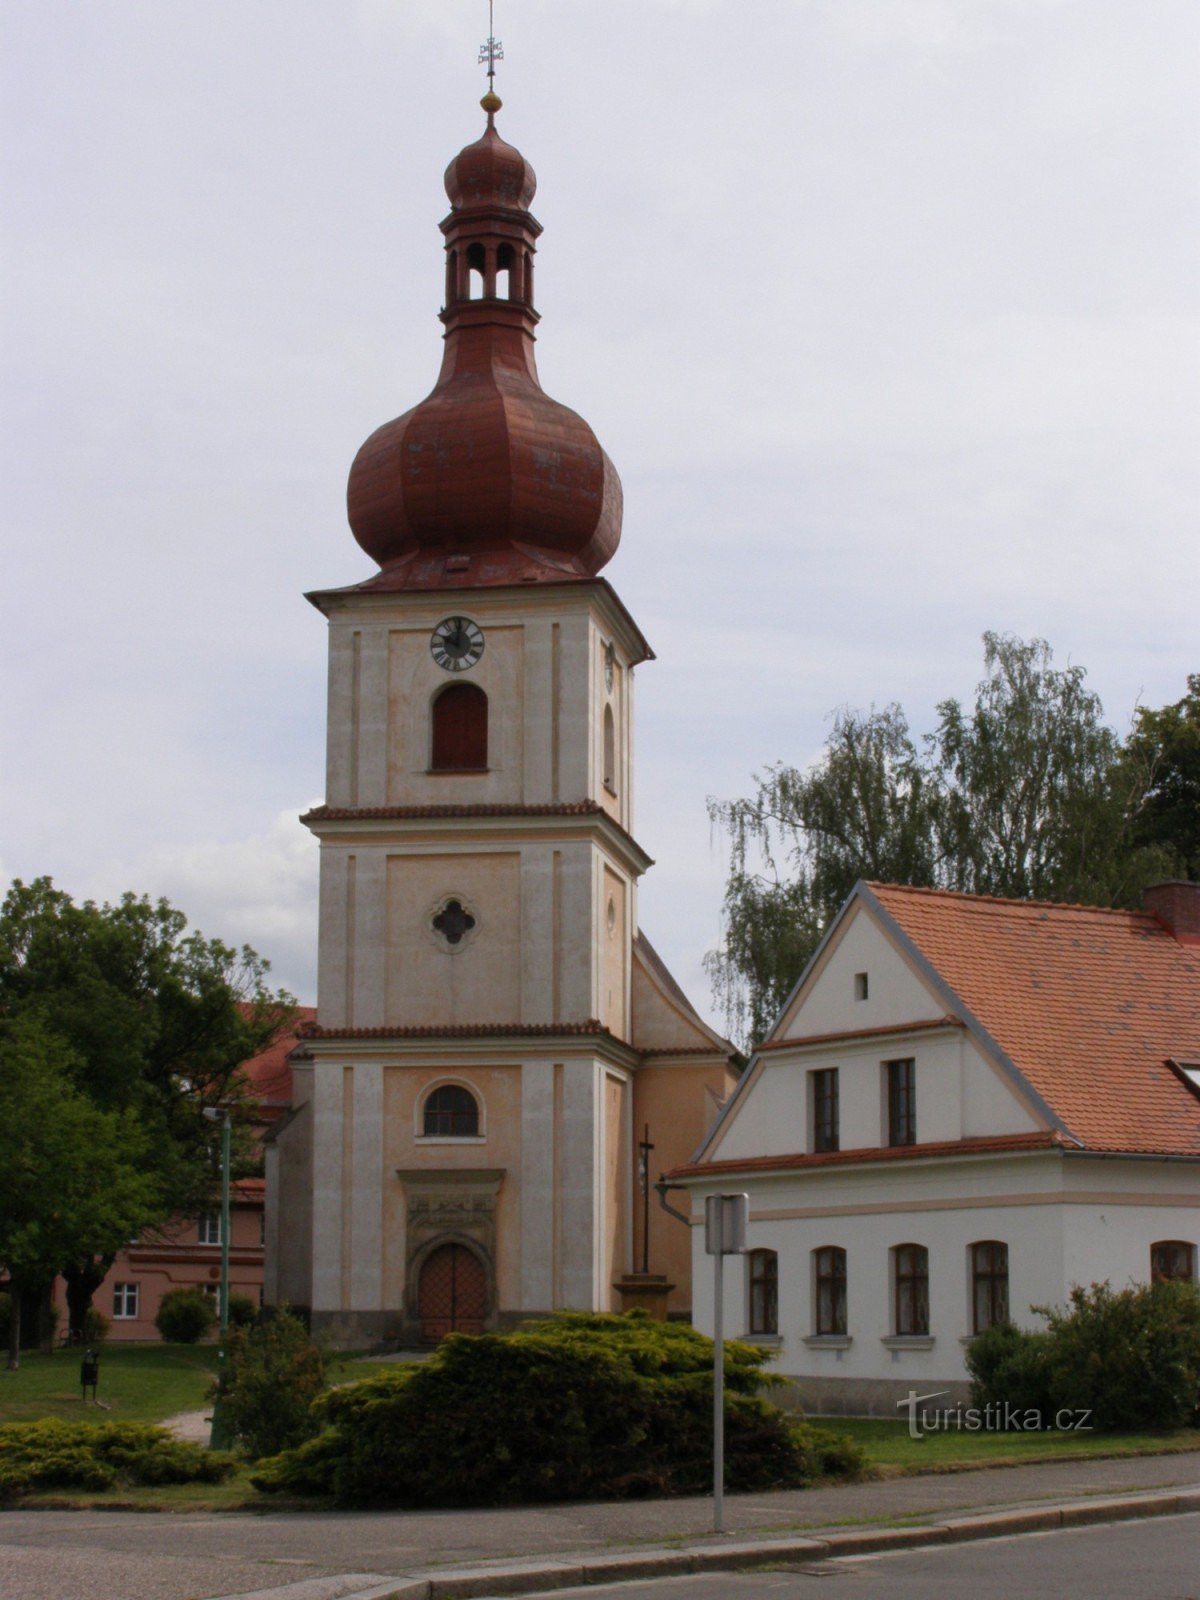 Jaroměř - cerkev sv. Jakub